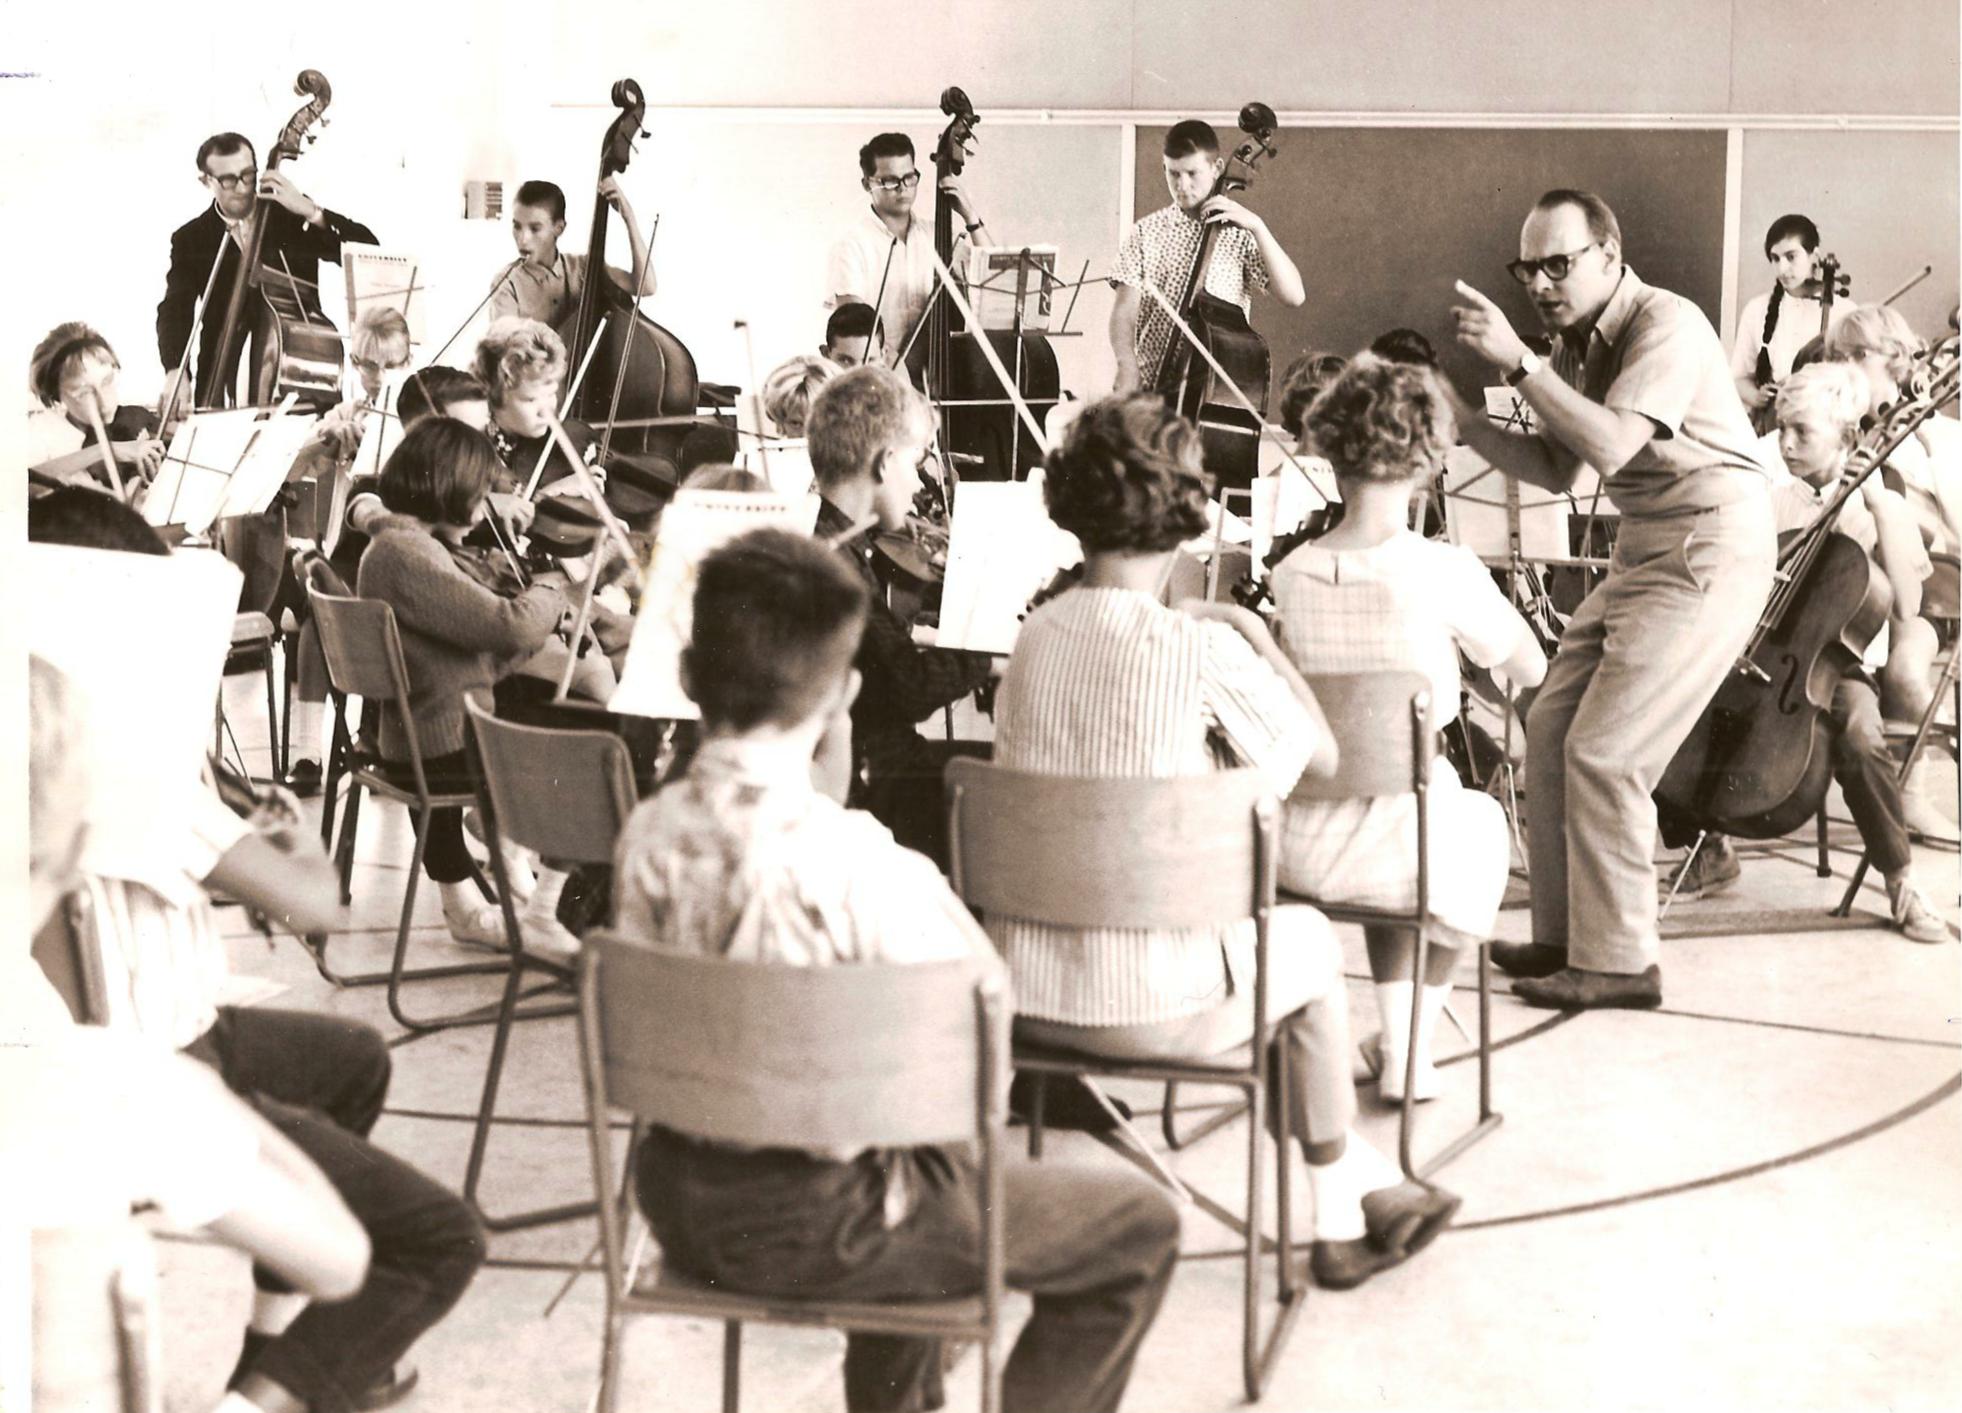 Paul dirige l’orchestre à l’école des cordes d’été 